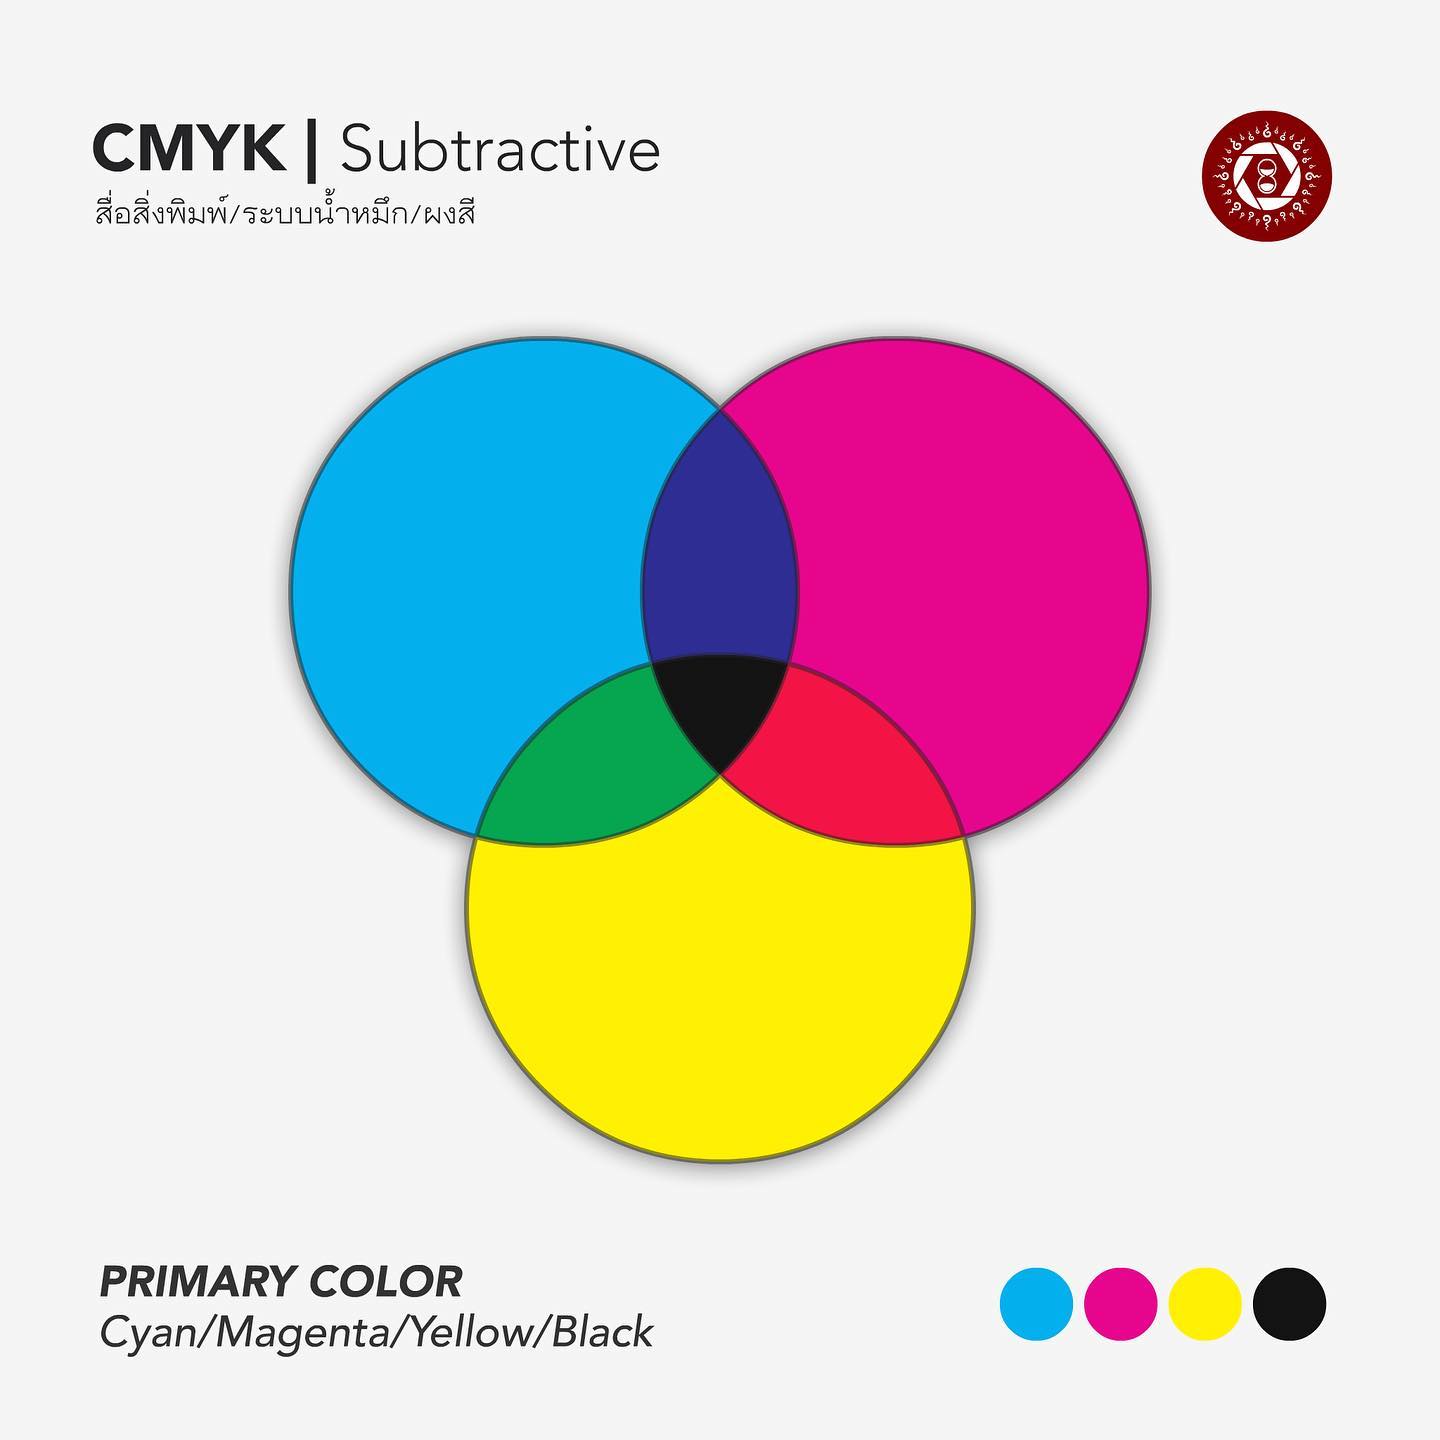 CMYK รูปแบบสีระบบงานพิมพ์

CMYK เป็นรูปแบบสีที่ถูกกำหนดขึ้นมาให้ใช้สำหรับงานศิลปะหรืองานสื่อสิ่งพิมพ์ลงบนวัตถุ ประกอบด้วย 4 แม่สีหลักได้แก่สีฟ้า (Cyan), สีม่วงแดง (Magenta), สีเหลือง (Yellow) และสีดำ (Black) สาเหตุที่ต้องมีสีดำเนื่องจากว่าการผสมสีระหว่างสีฟ้า + สีม่วงแดง และสีเหลืองทำให้ได้สีดำที่ไม่ดำสนิท จึงต้องมีการถมดำลงไปอีกครั้ง ดังนั้นระบบพิมพ์ 4 สีจึงหมายถึง 4 แม่สีนี้นั่นเอง

การรวมตัวของสีในรูปแบบนี้เราเรียกว่าเป็นการรวมตัวแบบลบ (Subtractive Color)
#ทฤษฎีสี #ศิลปะ